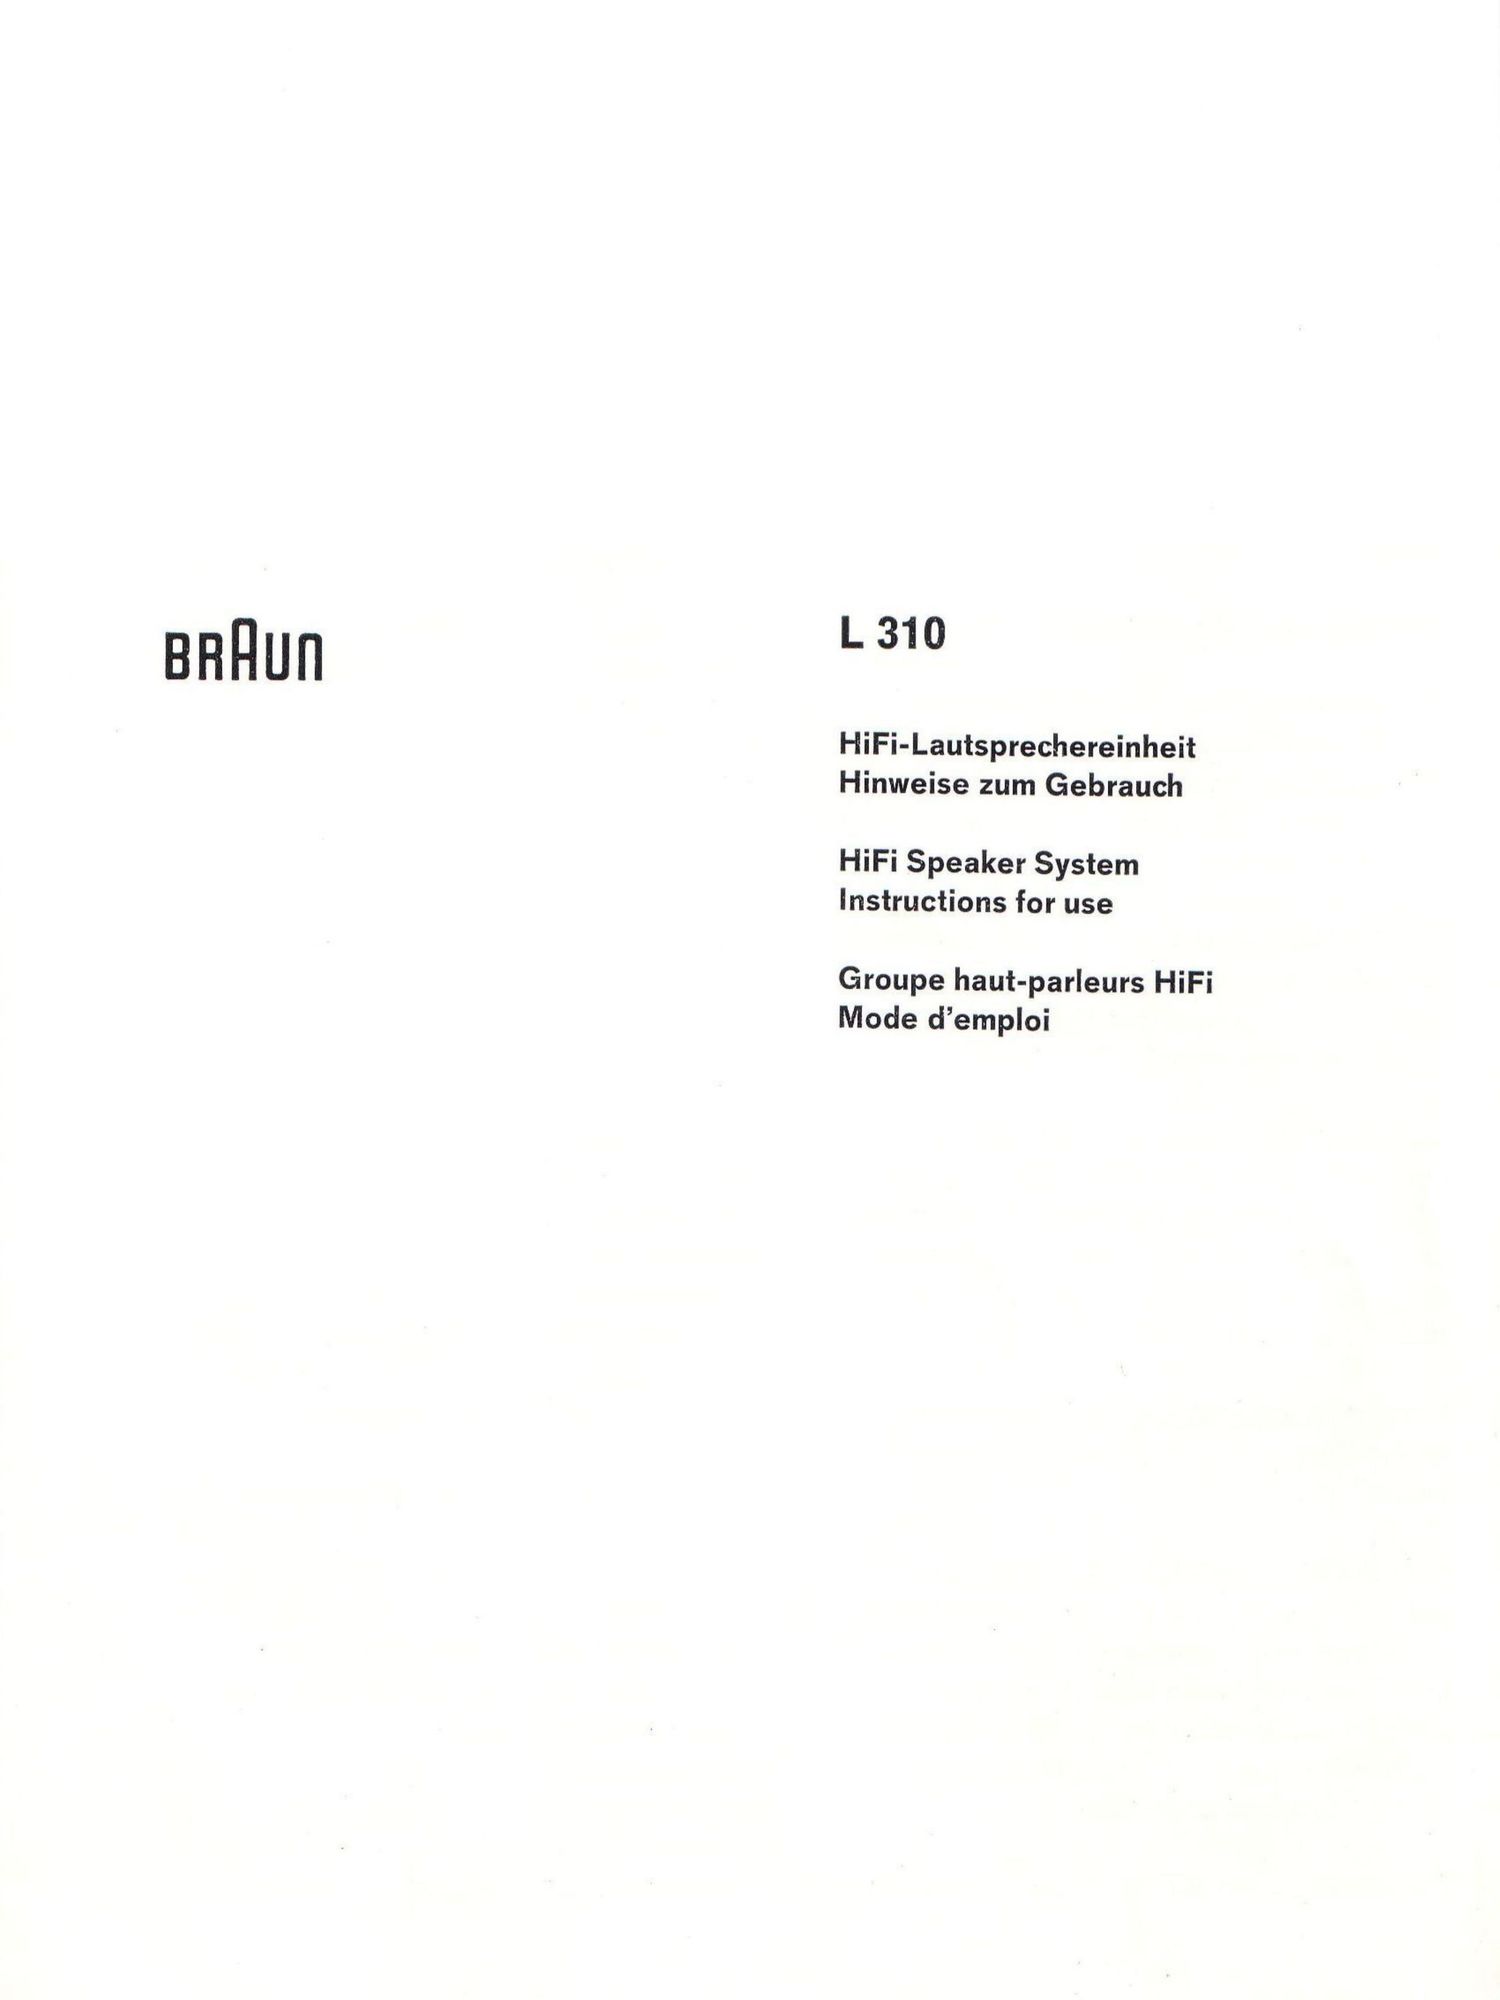 Braun L 310 Manual